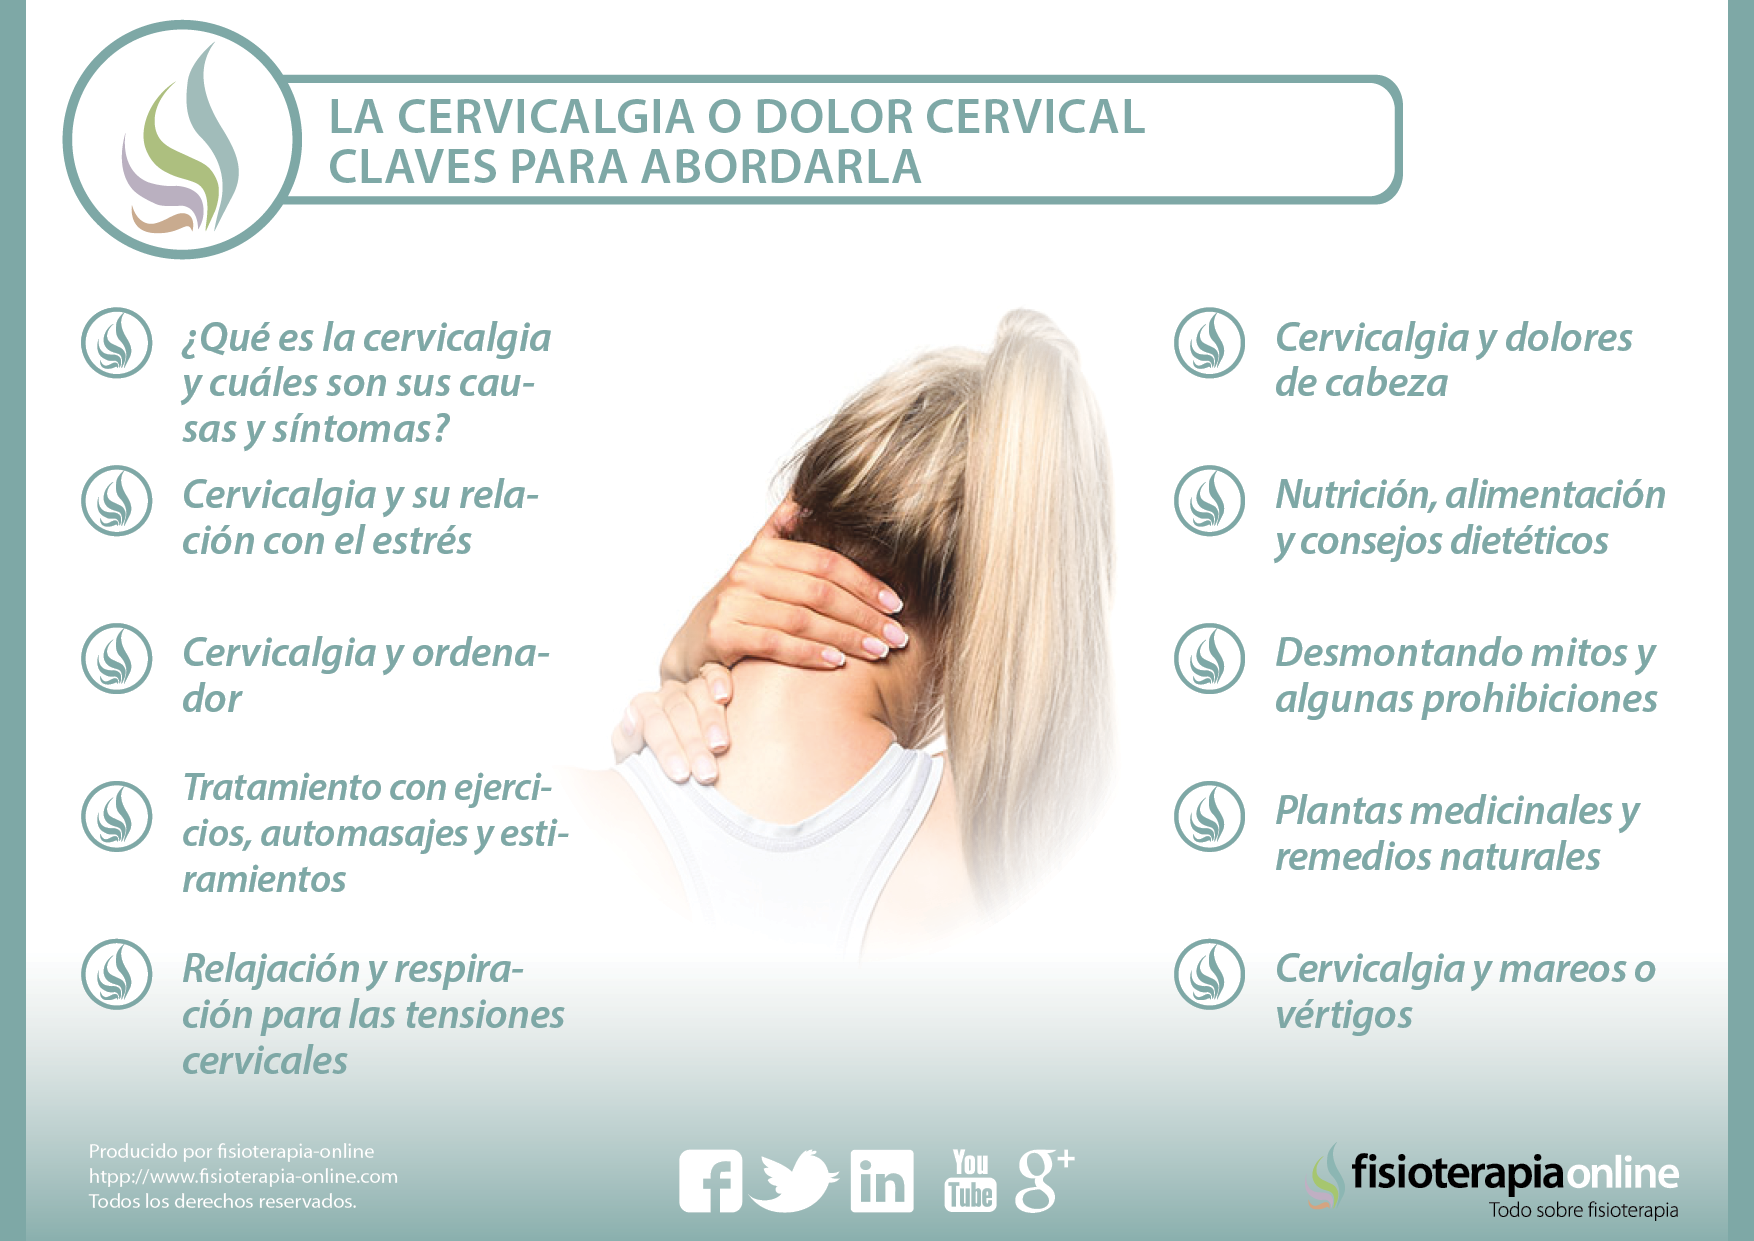 La cervicalgia o dolor cervical, Información, tratamiento y consejos